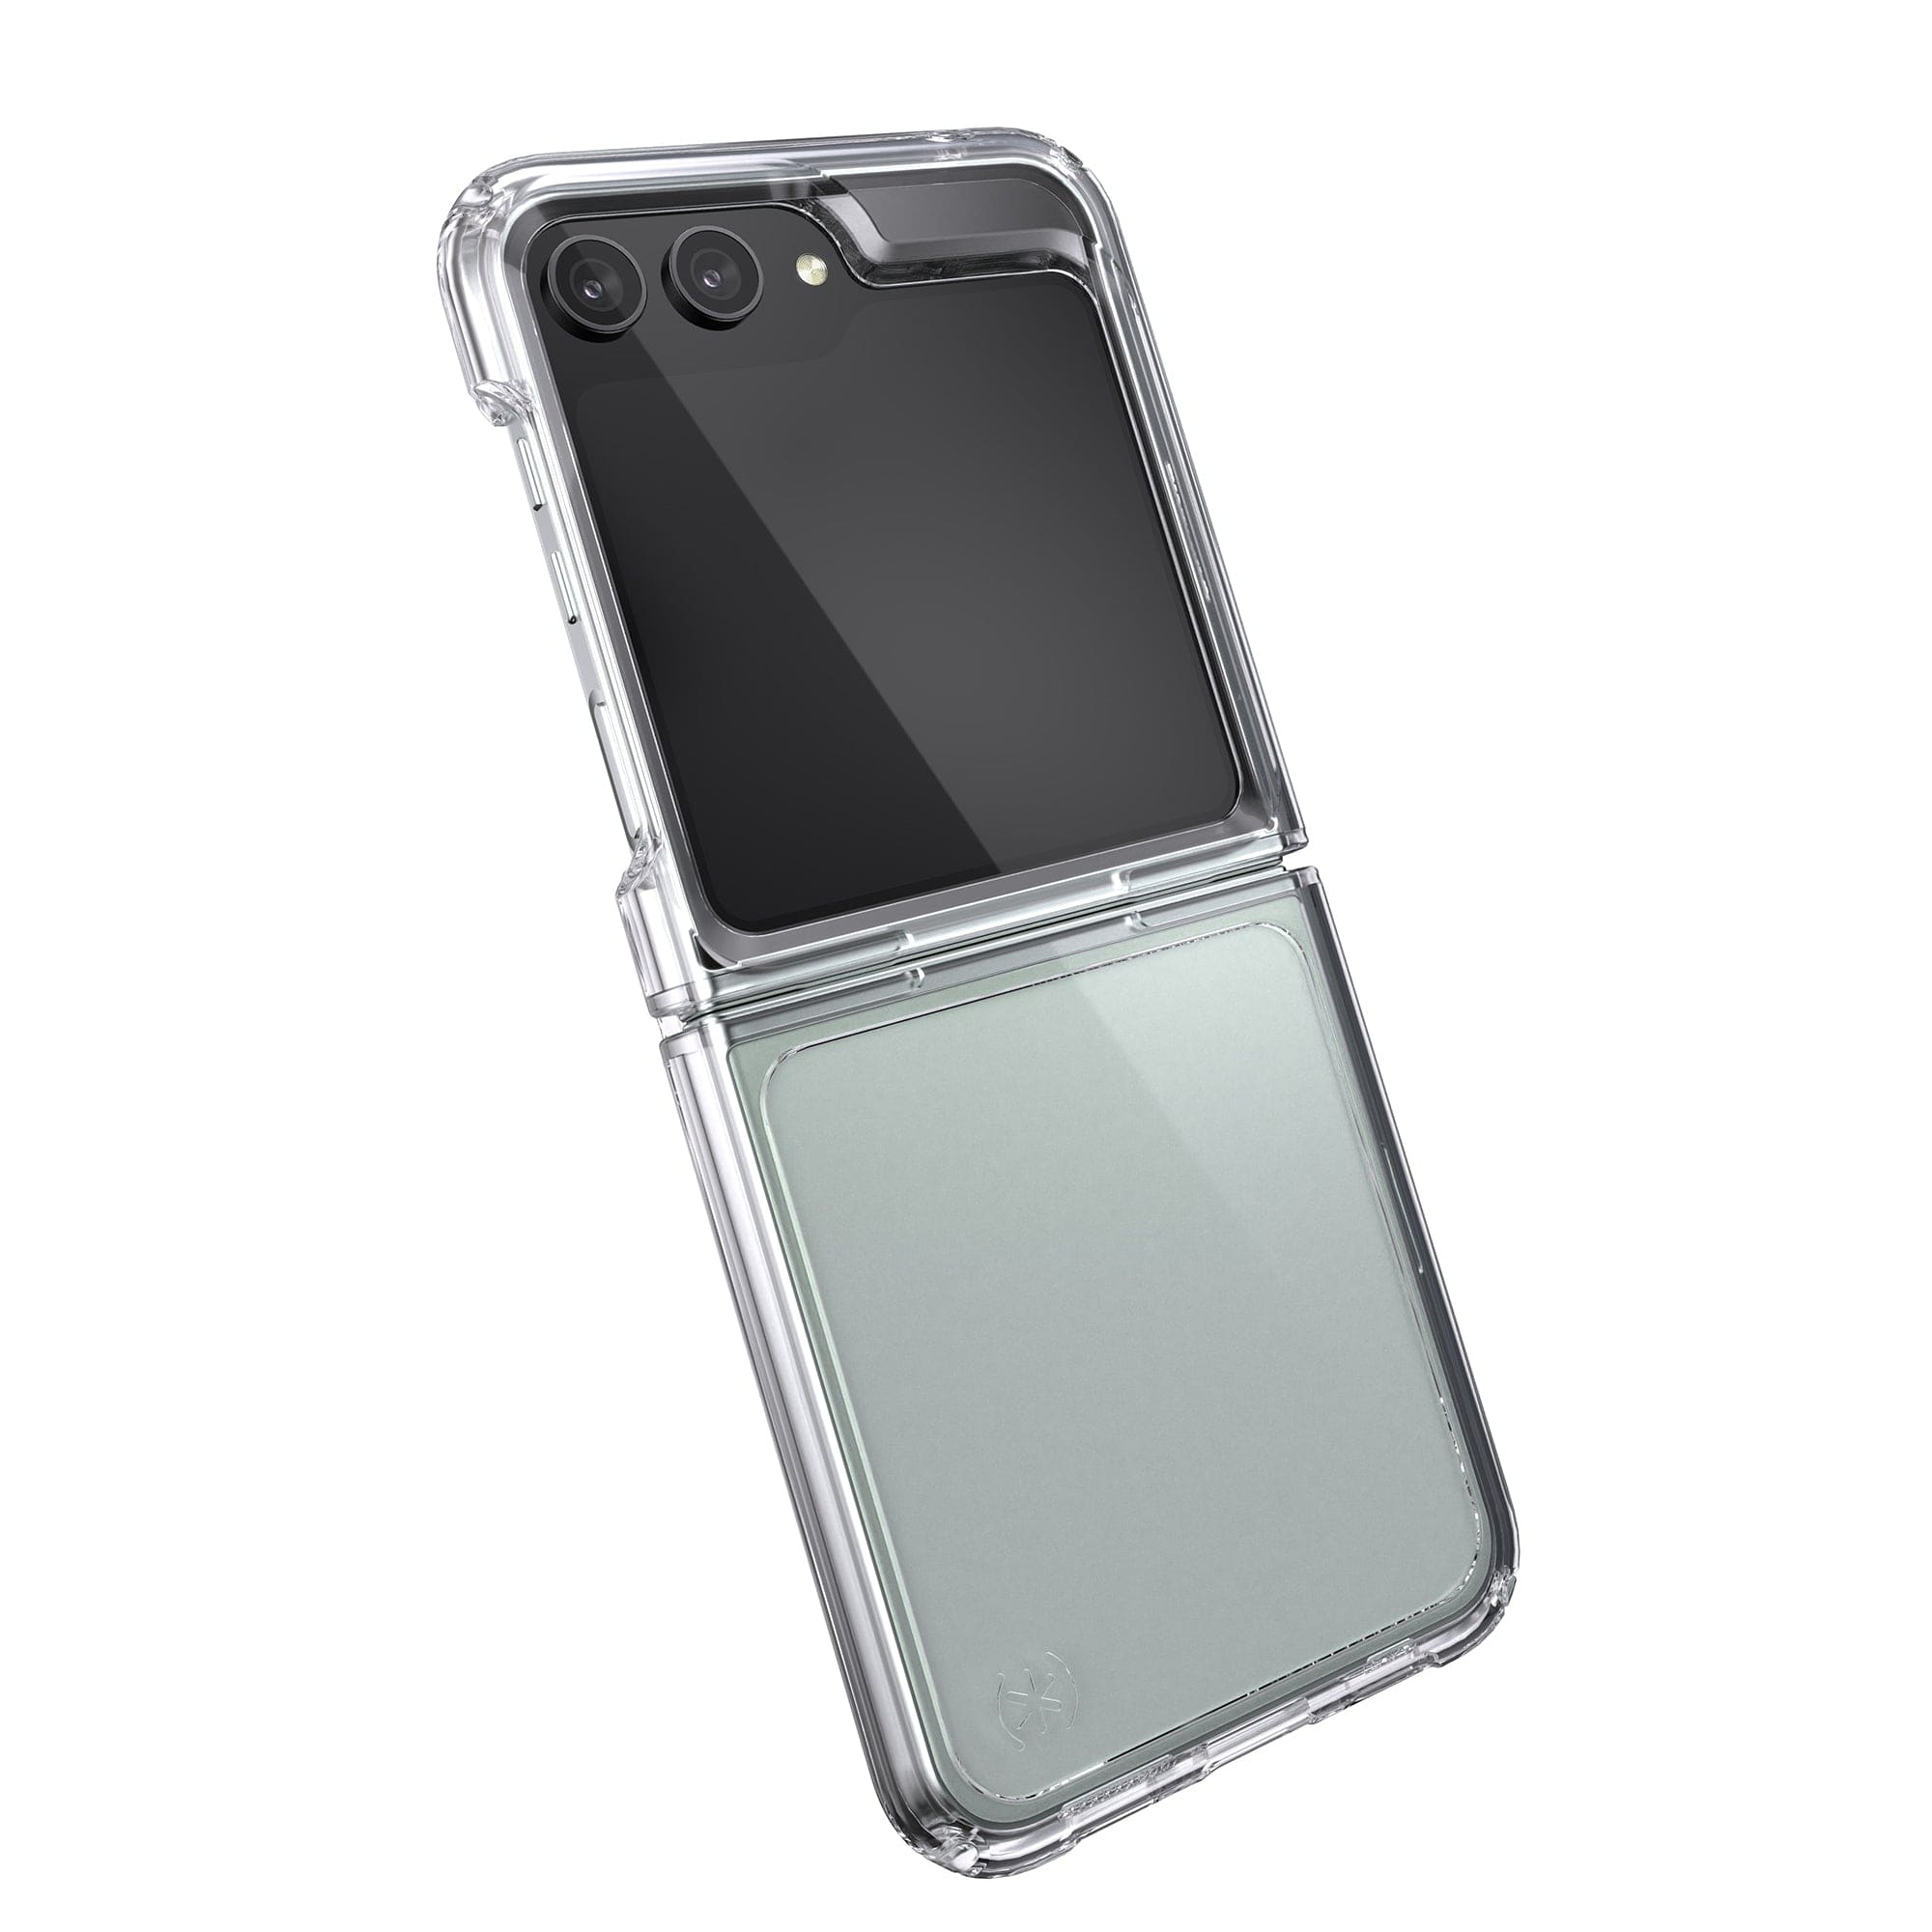 Clear folding Galaxy Z Flip5 Case